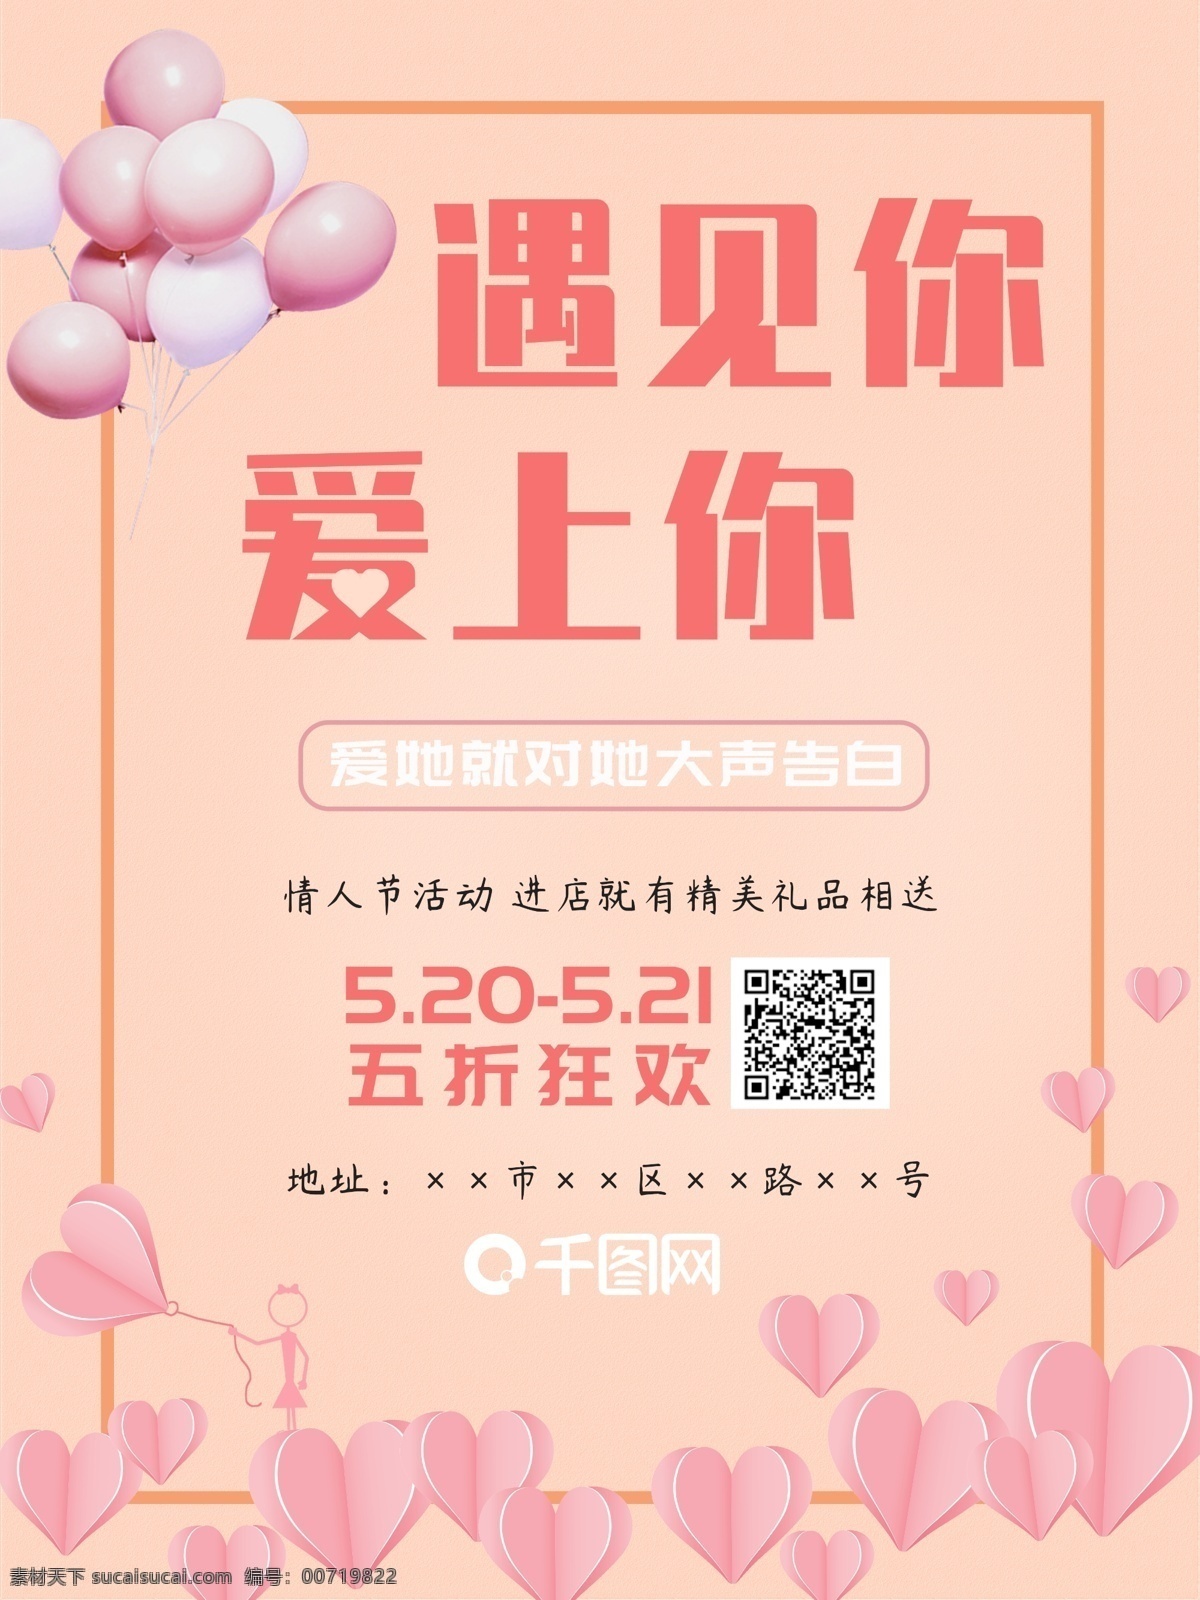 520 海报 传单 情人节 粉色 浪漫 爱情 促销 爱心 商场促销 超市促销 甜蜜 模板 气球 二维码 橙色 遇见